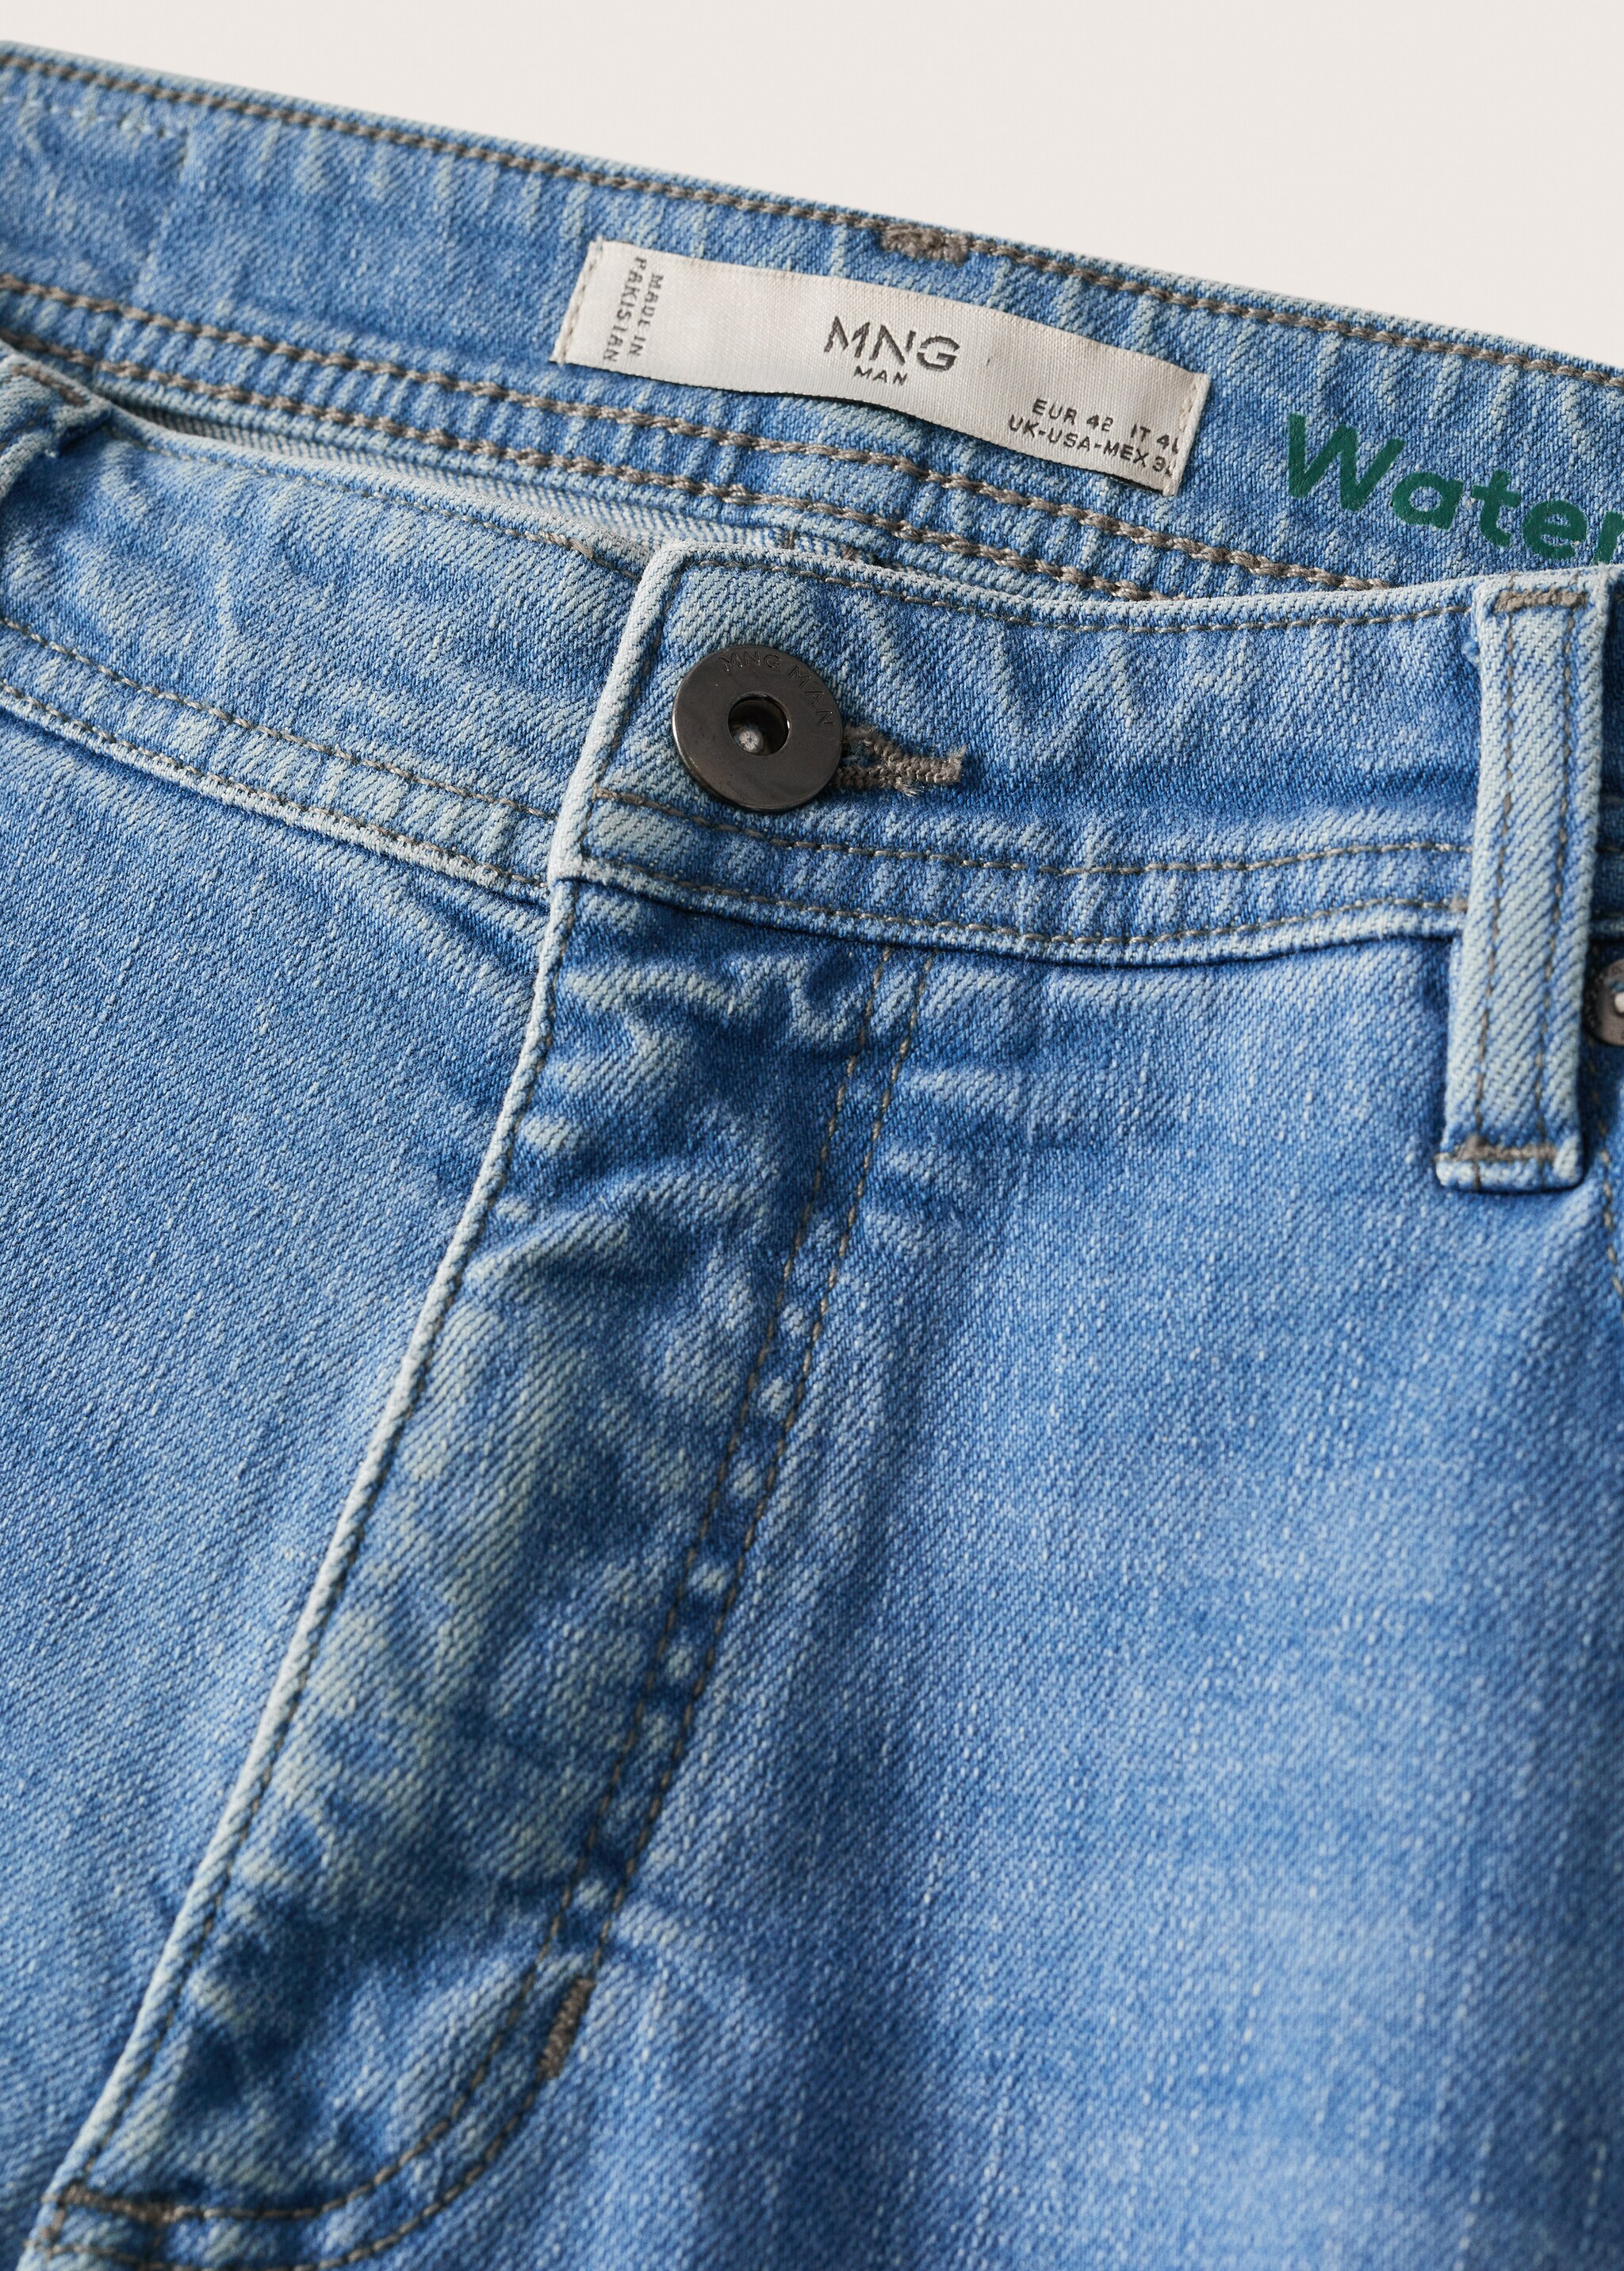 Jeans Jan slim fit  - Detalle del artículo 7